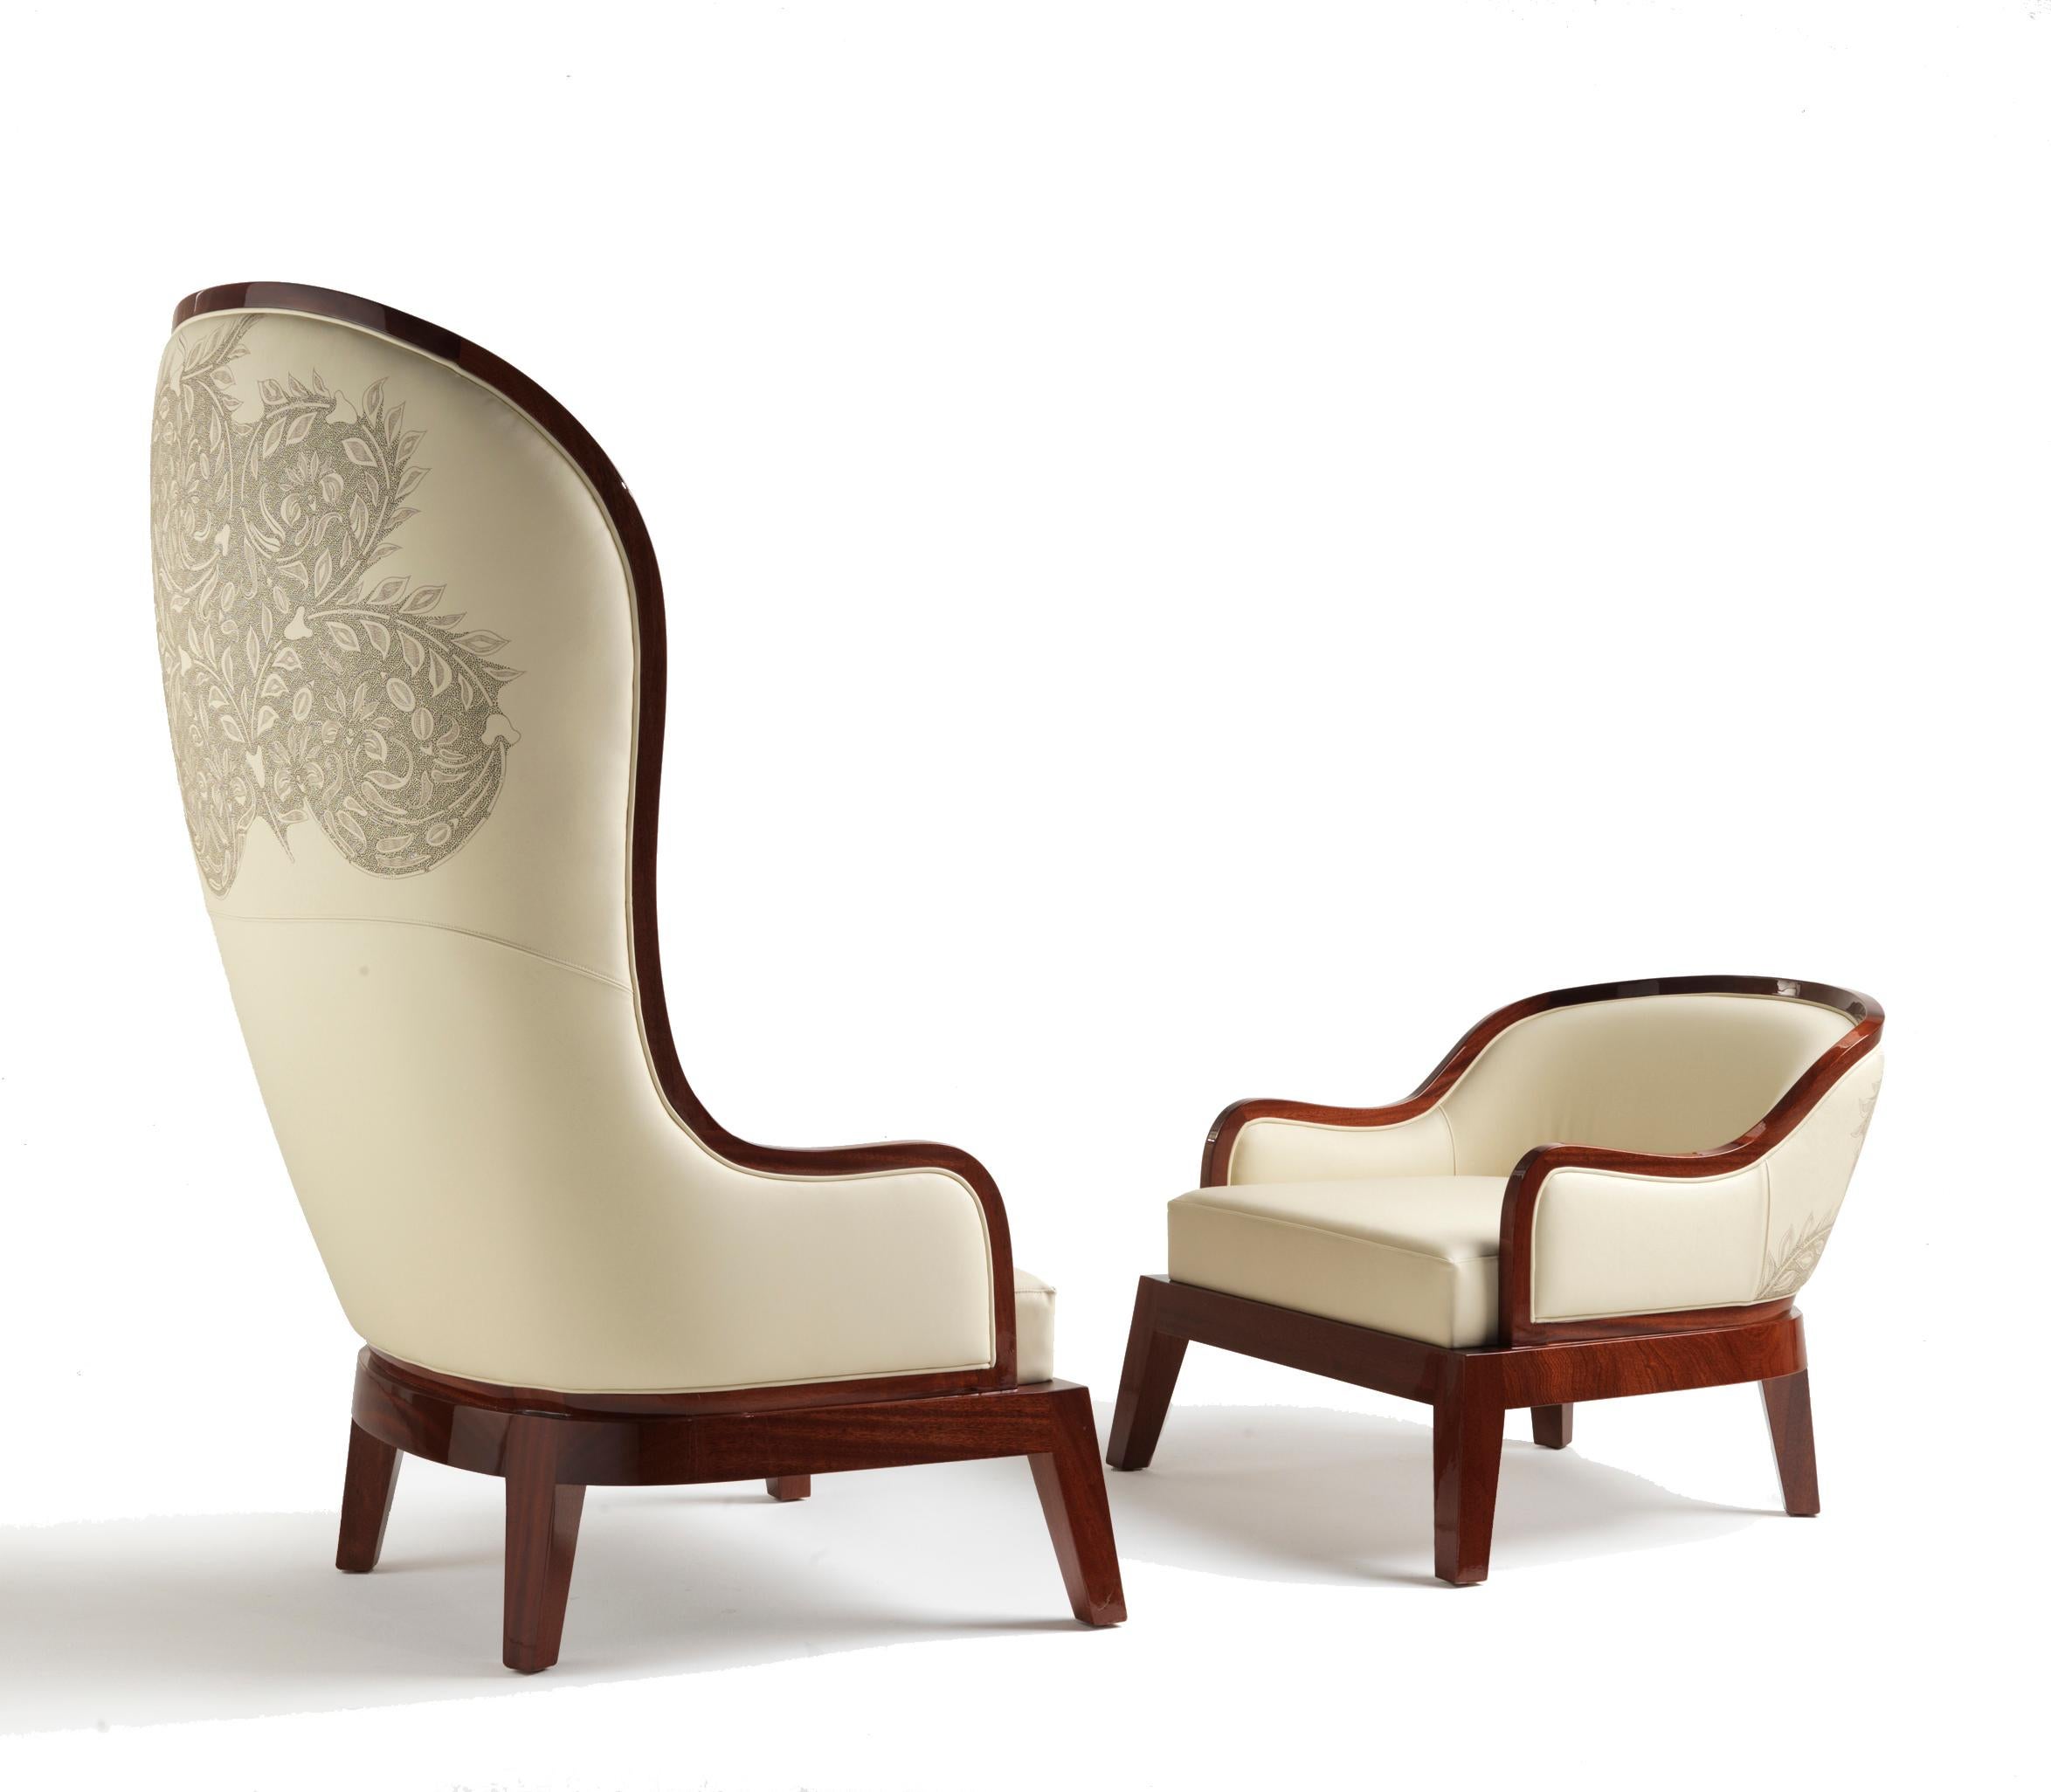 
Der Sessel Madama mit niedrigem Sitz ist eine exquisite Kombination aus kompaktem Design und zeitloser Eleganz. Der Sessel zeichnet sich durch seine fließende Mahagonikontur aus und schafft eine visuelle Symphonie, die Form und Funktion nahtlos